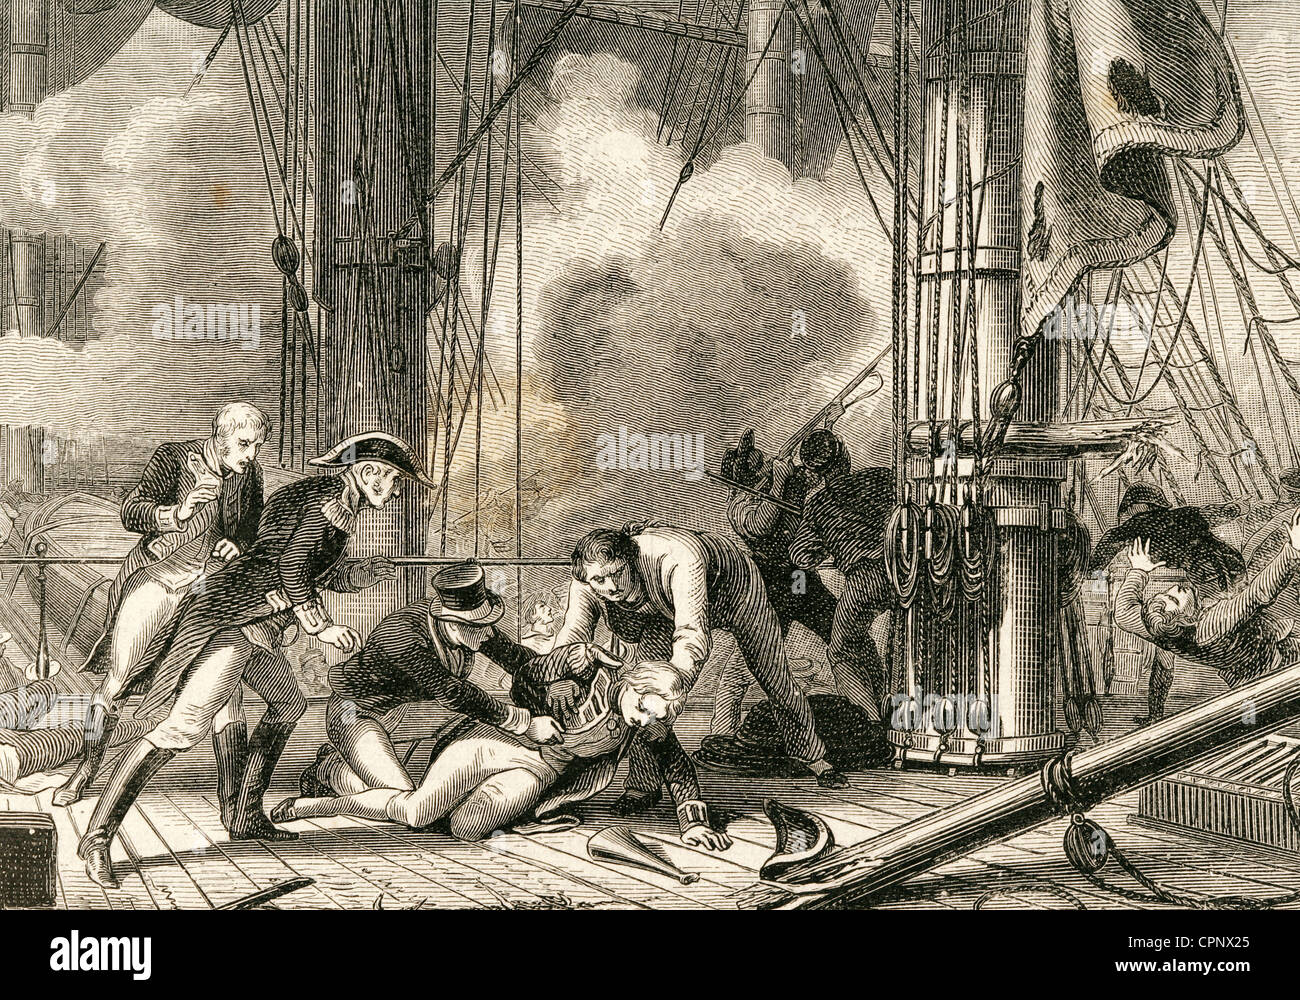 Horatio Nelson (1758-1805). Britischer Vizeadmiral. Tod von Nelson in der Schlacht von Trafalgar 1805. Gravur. Stockfoto